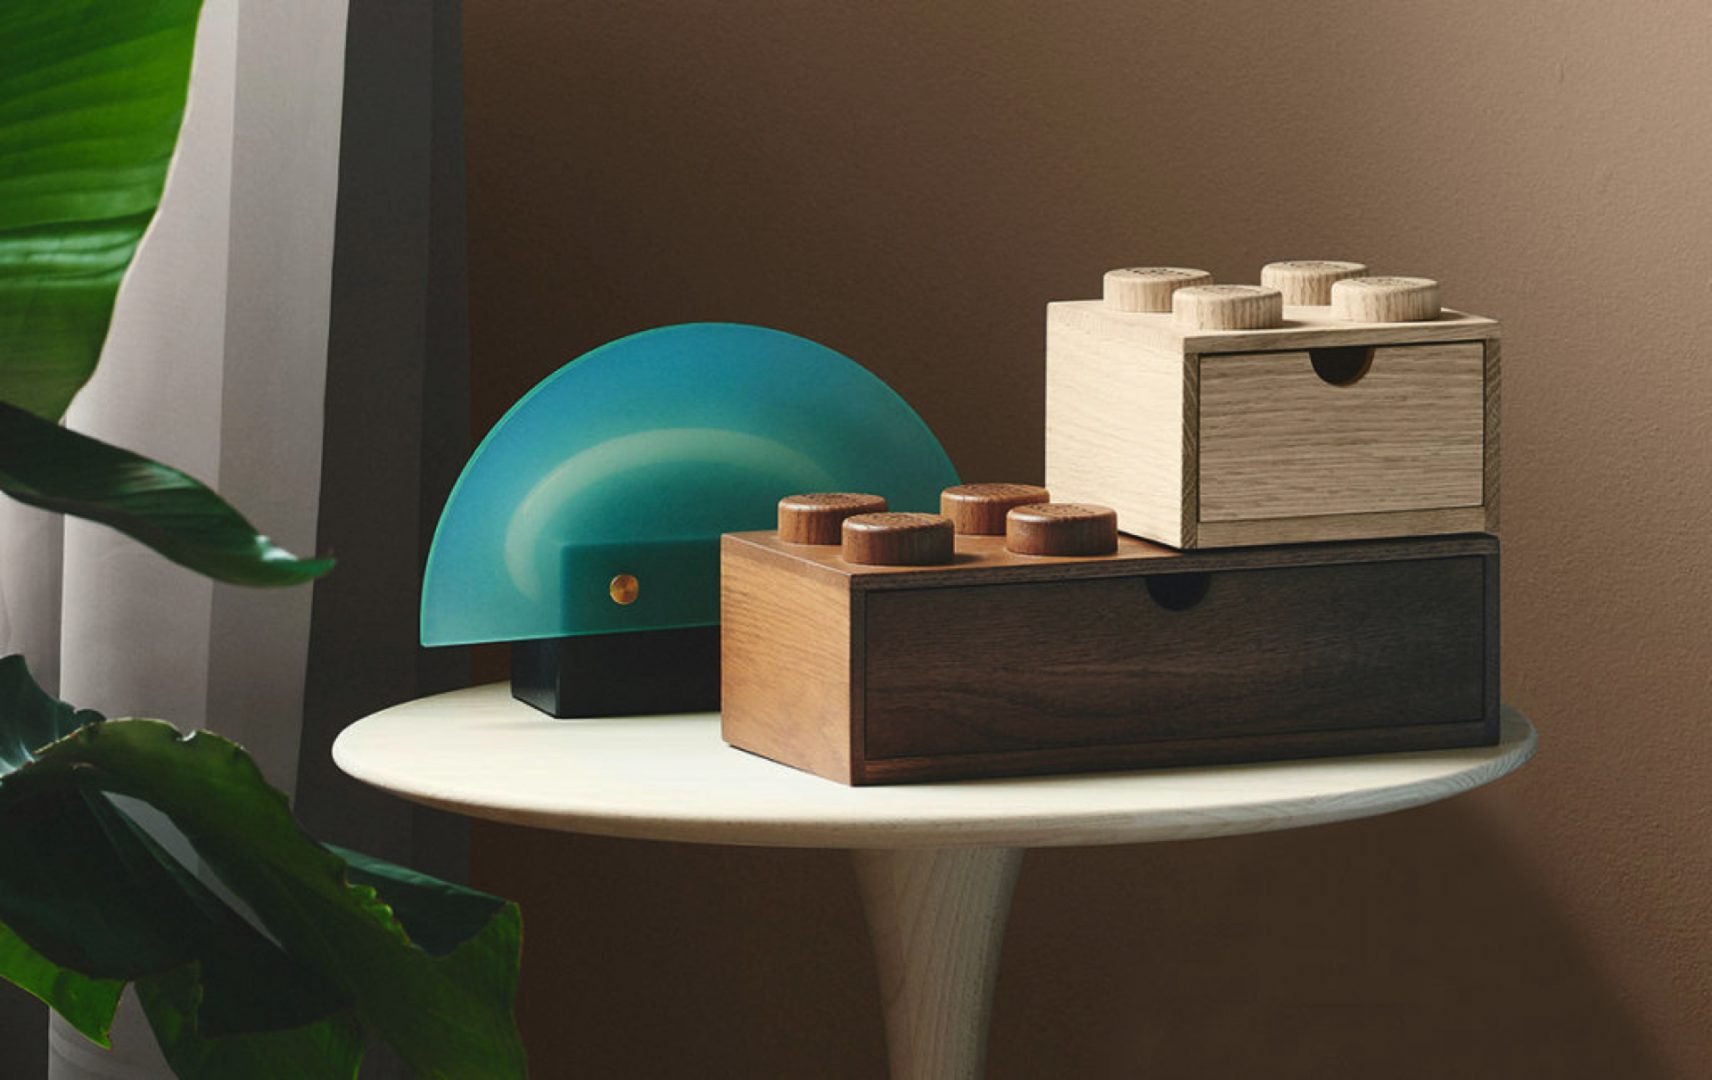 Lego y el diseño nórdico se unen en esta nueva serie de accesorios de muebles de madera